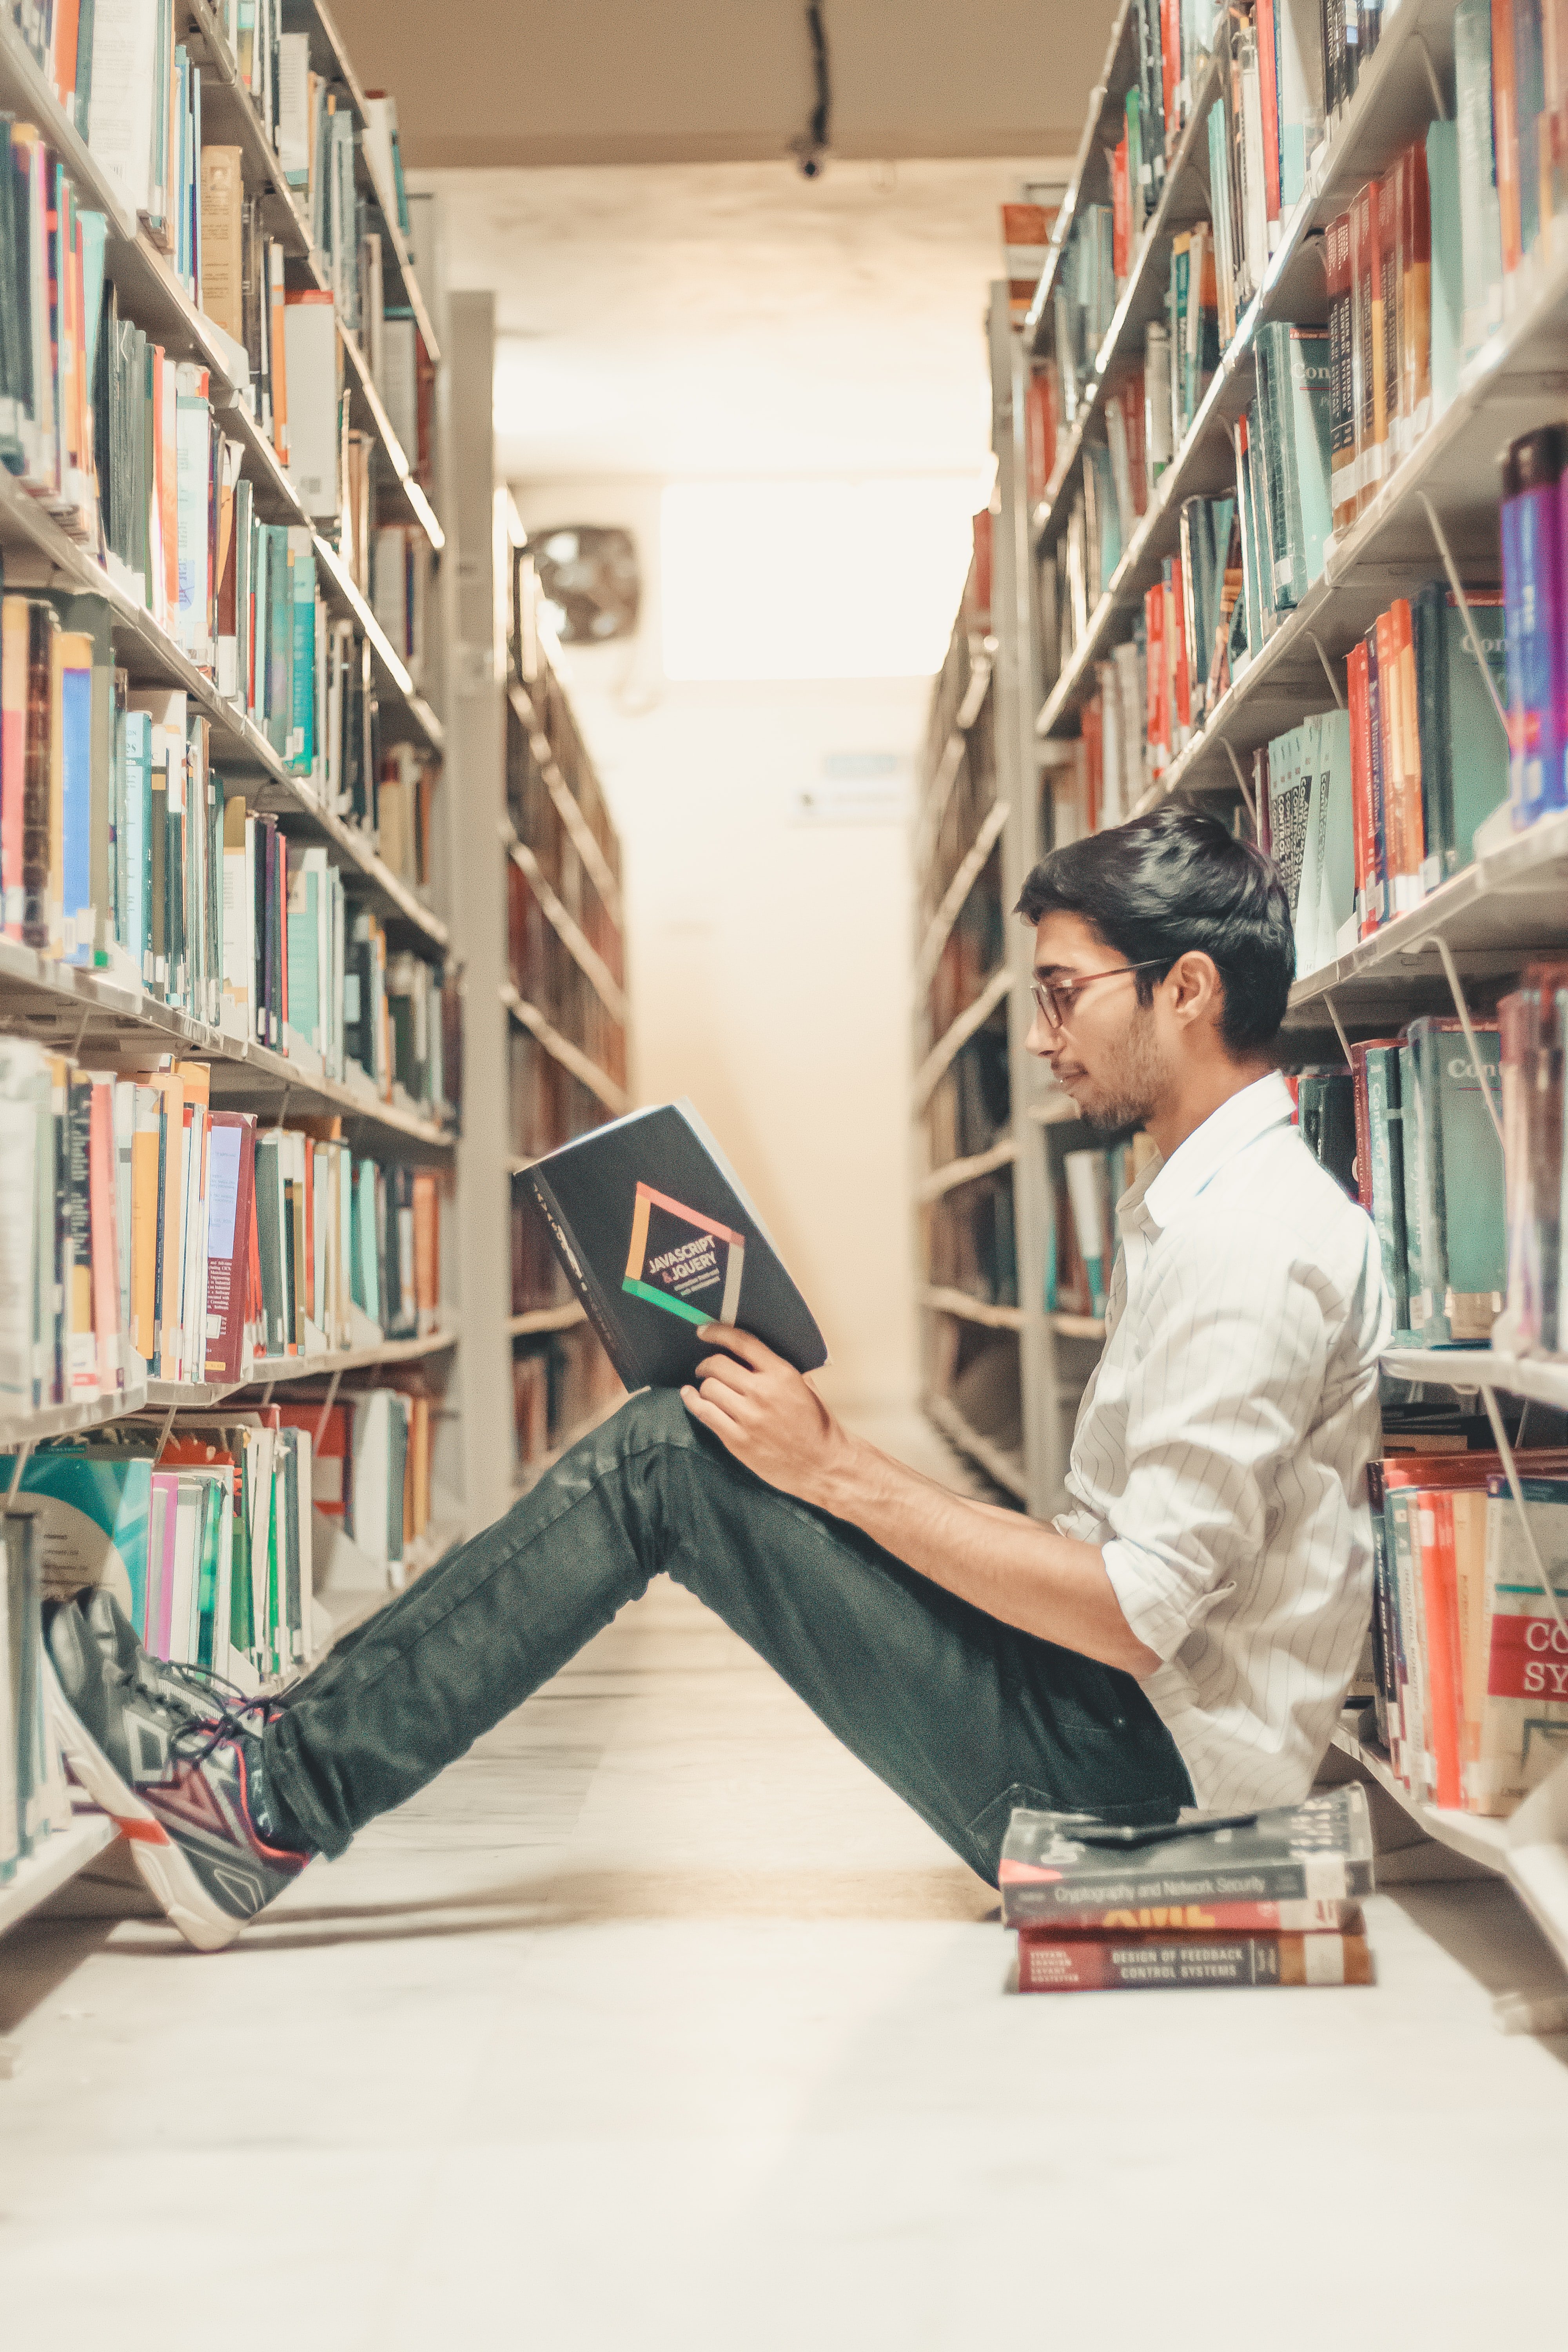 Un joven lee un libro en la biblioteca. | Foto: Unsplash